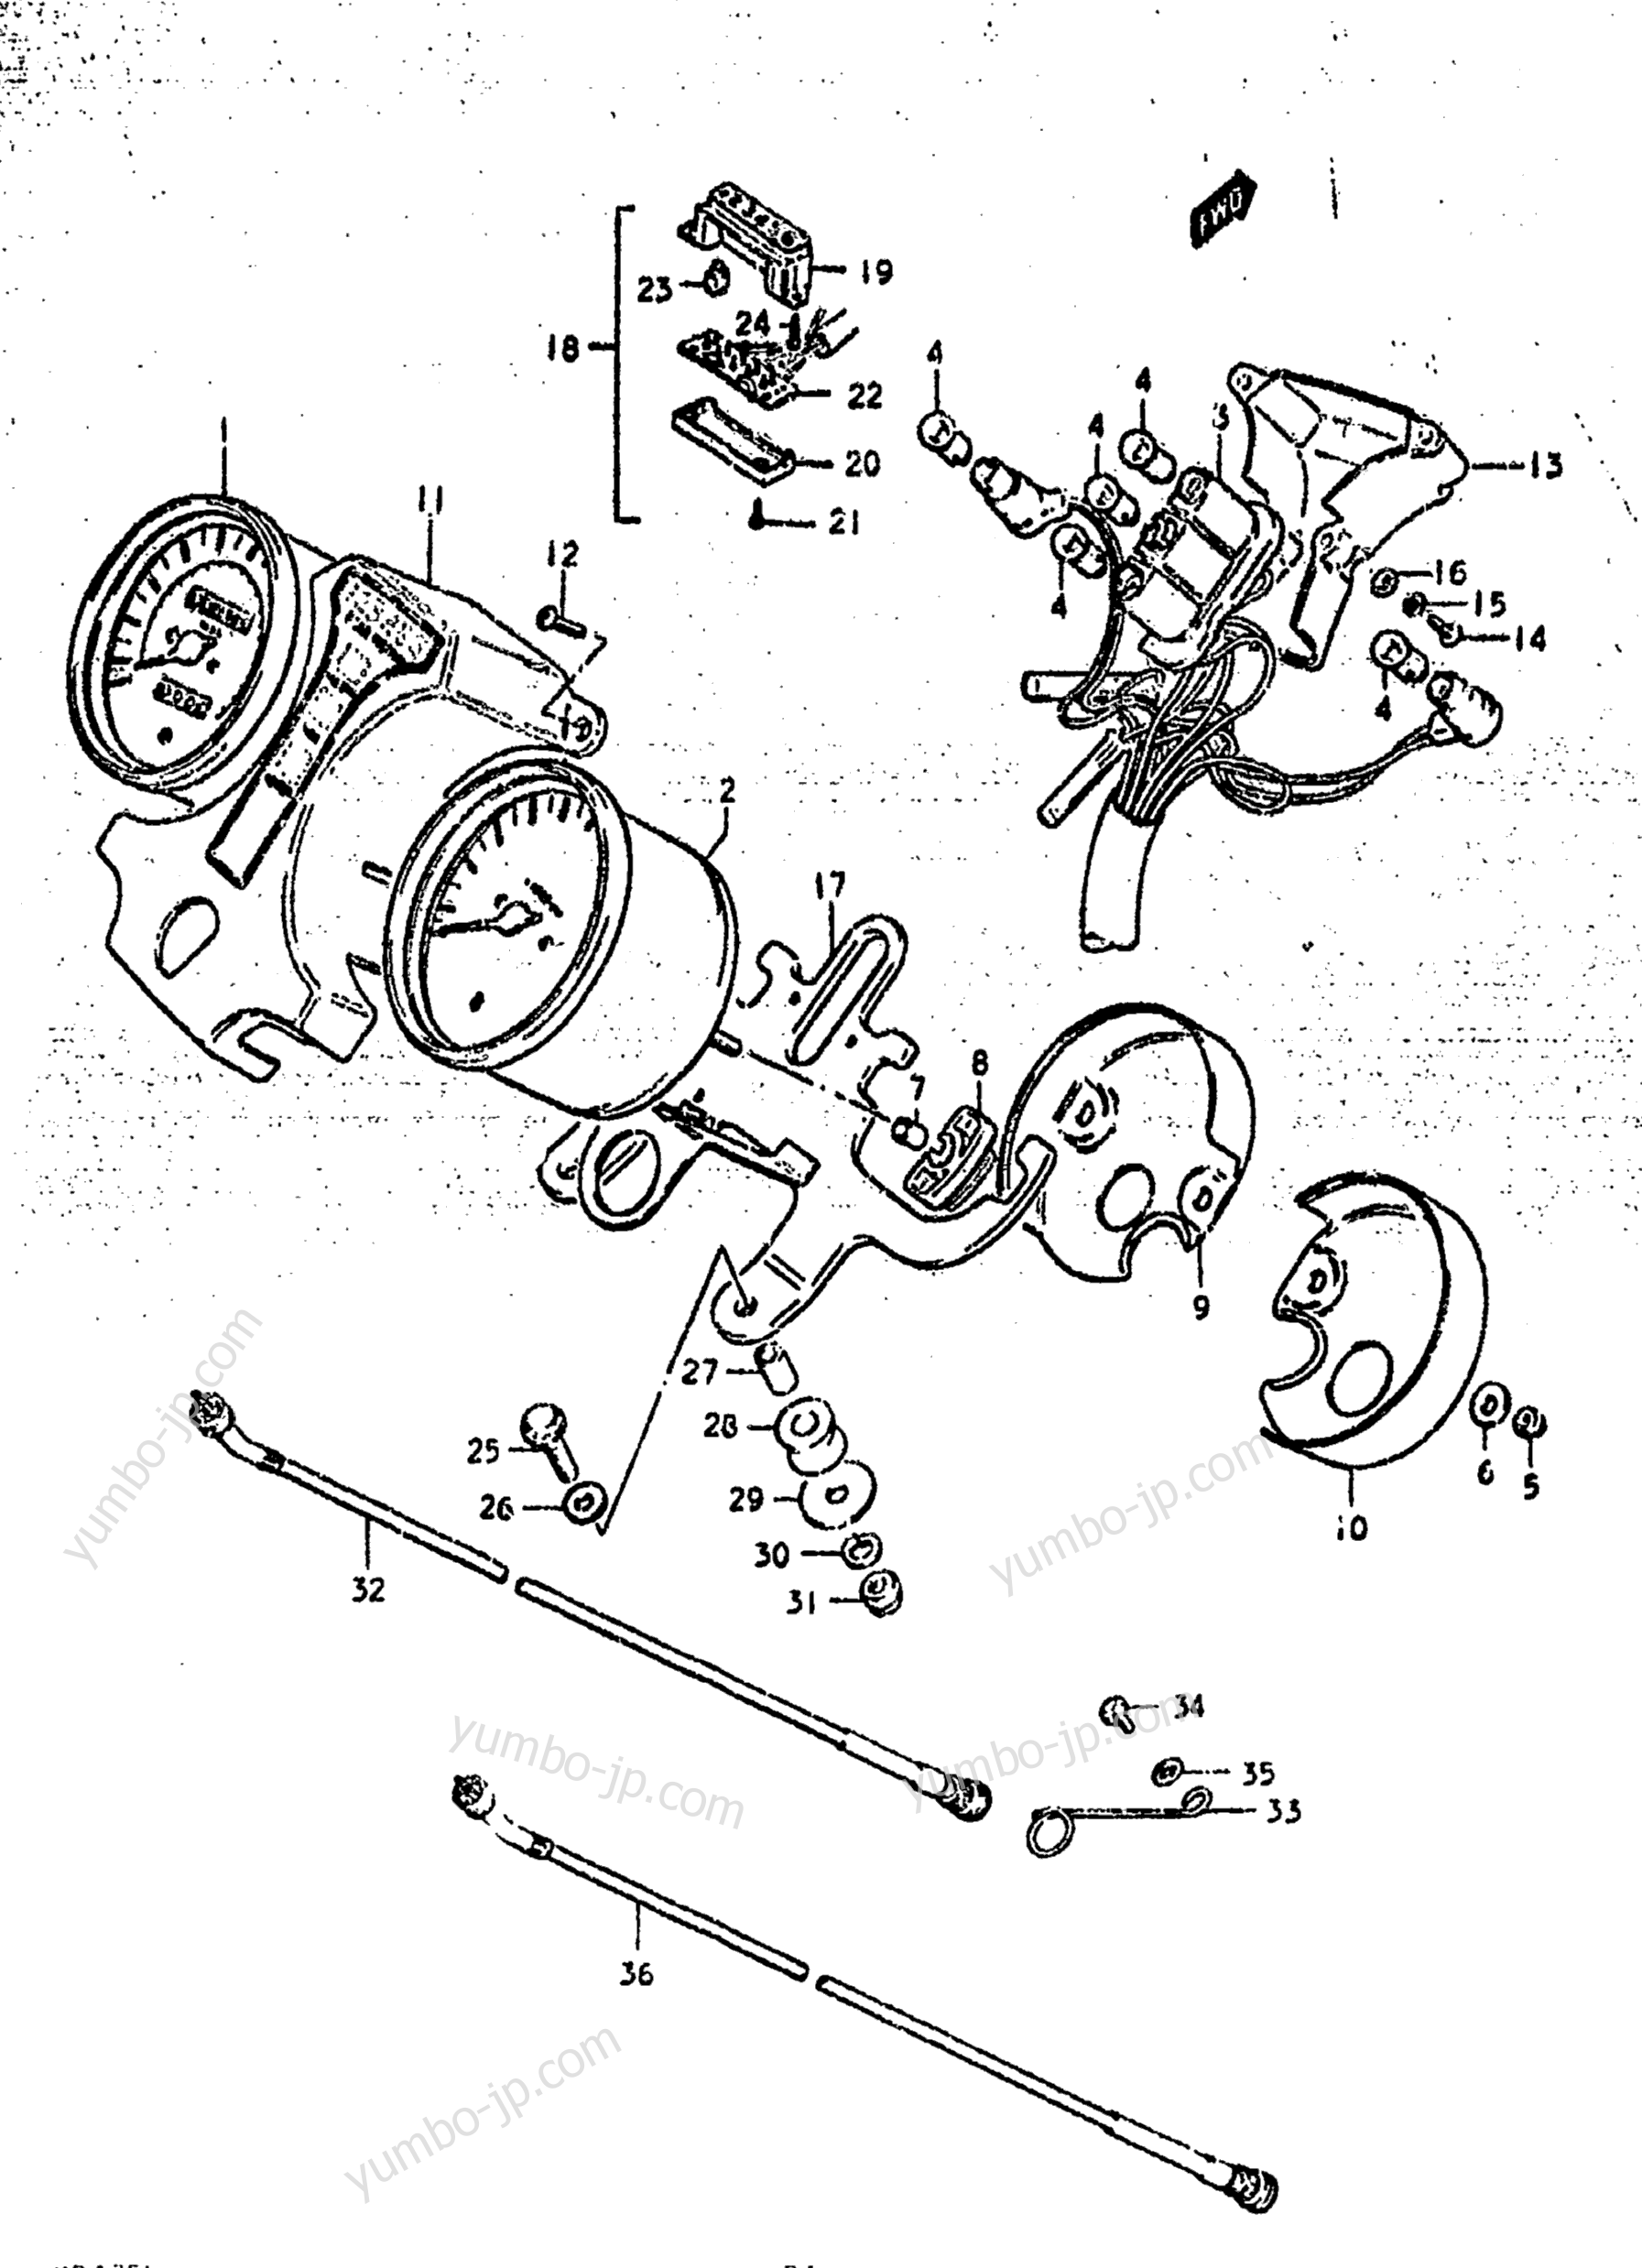 Speedometer - Tachometer for motorcycles SUZUKI GS425L 1979 year